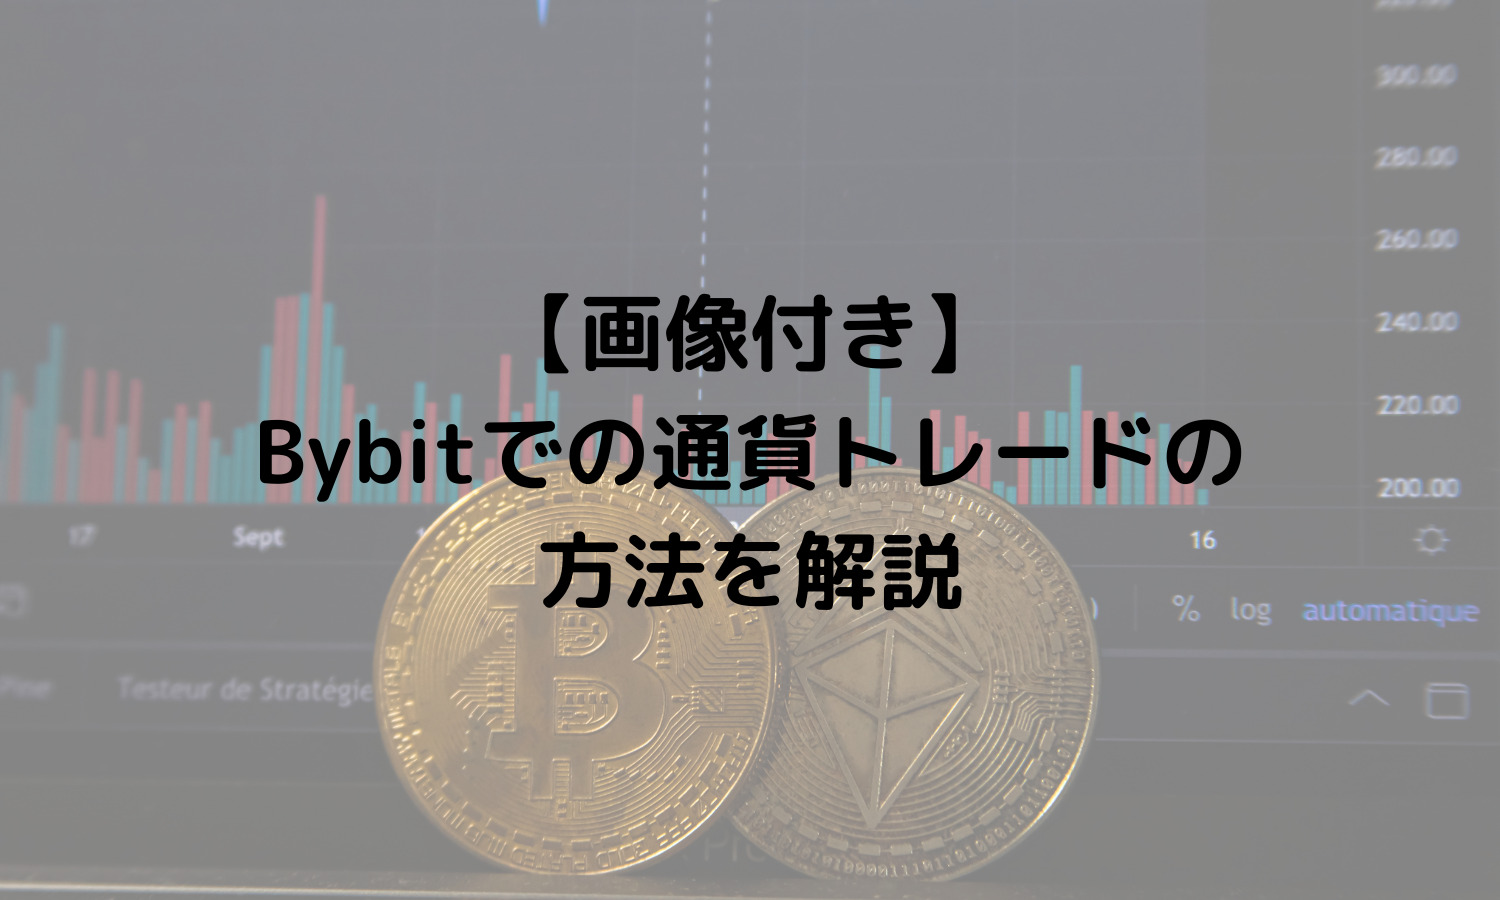 【画像付き】Bybitでの通貨トレードの方法を解説